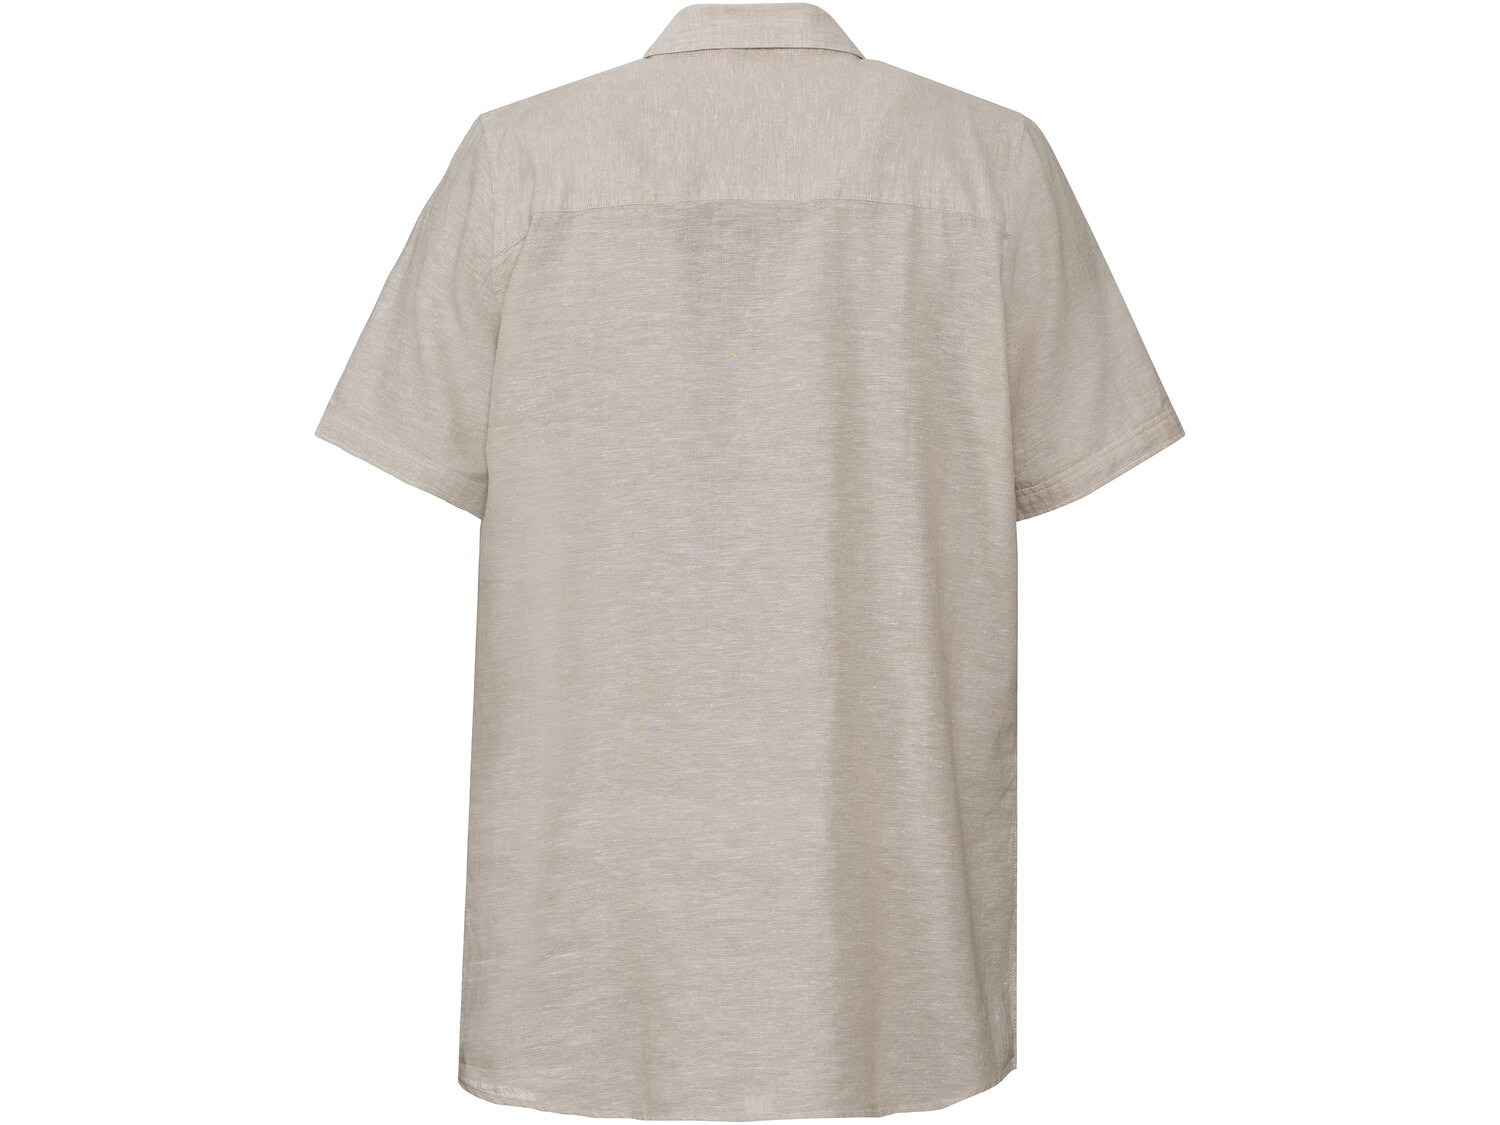 Koszula męska z lnem , cena 39,99 PLN 
- 55% lnu, 45% bawełny
- rozmiary: M-XL
- ...